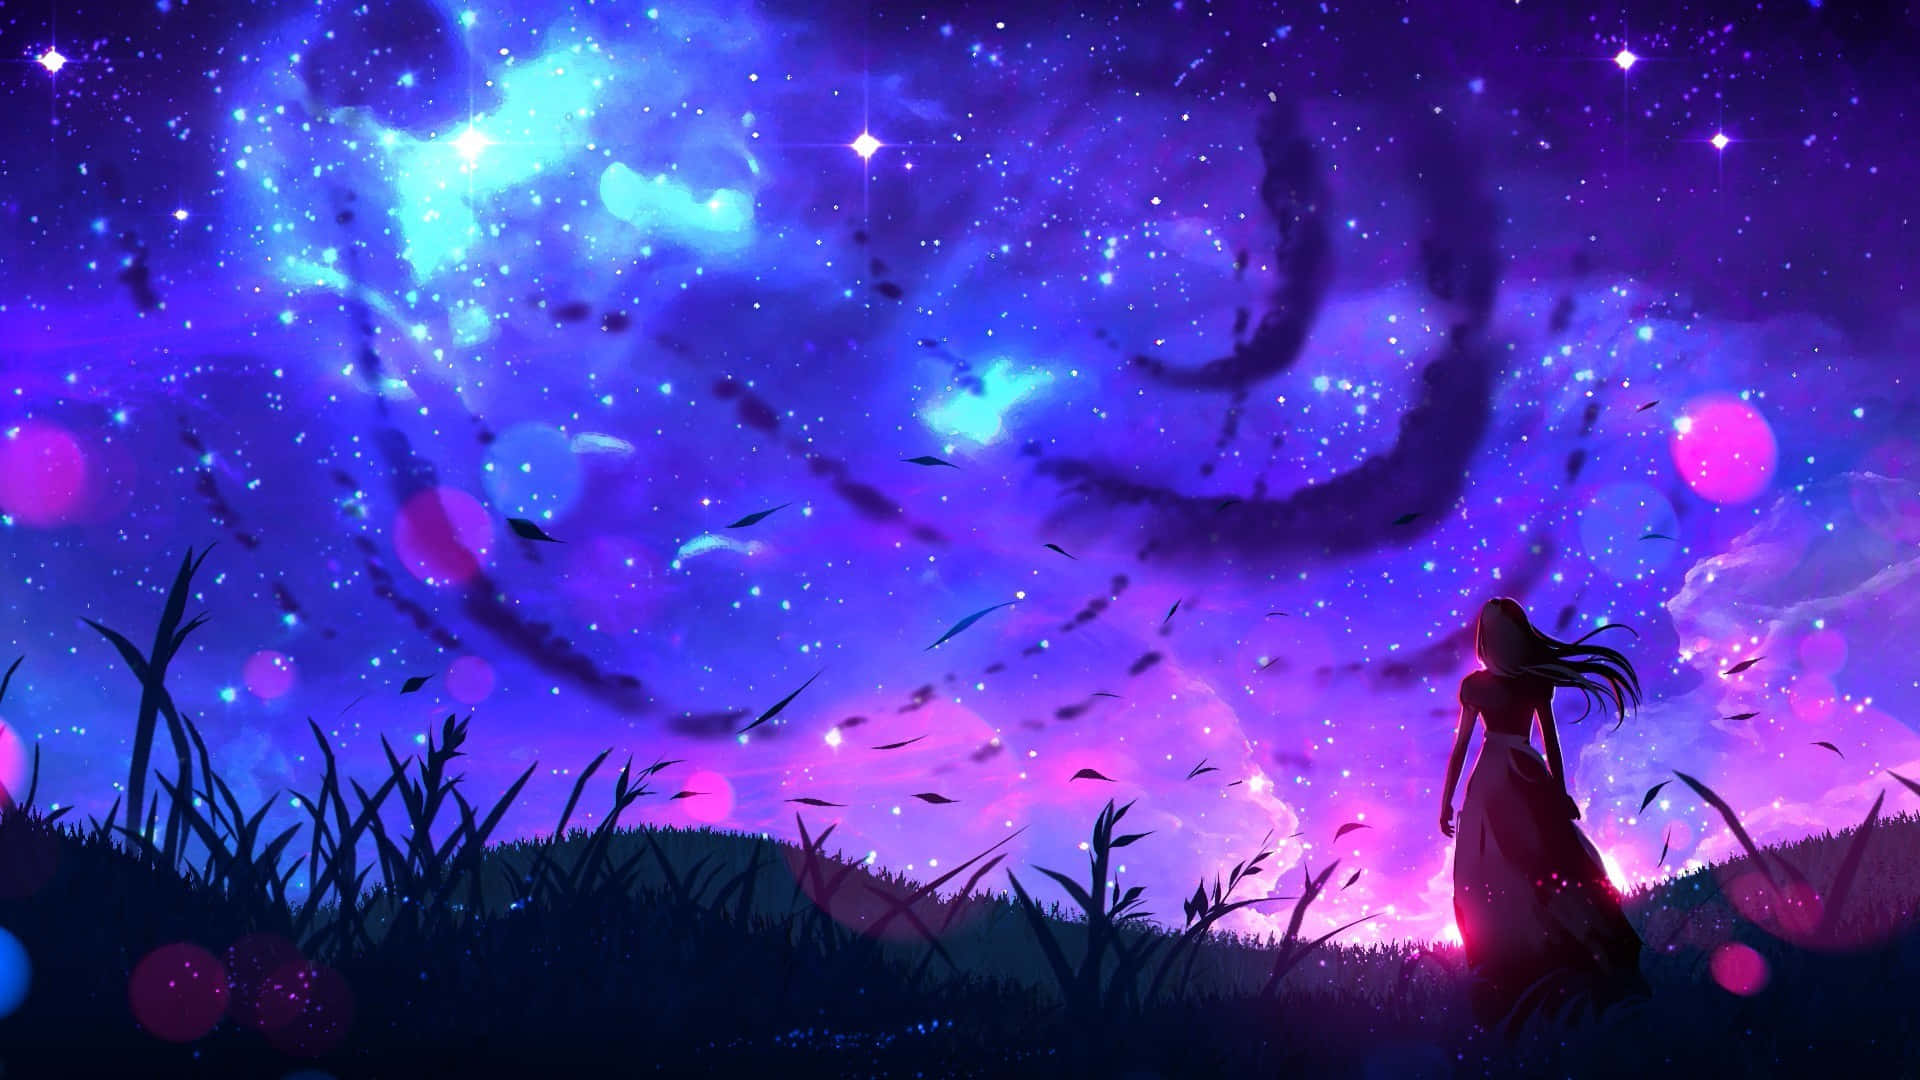 Cielocon Nubes Giratorias Nocturnas De Anime Fondo de pantalla